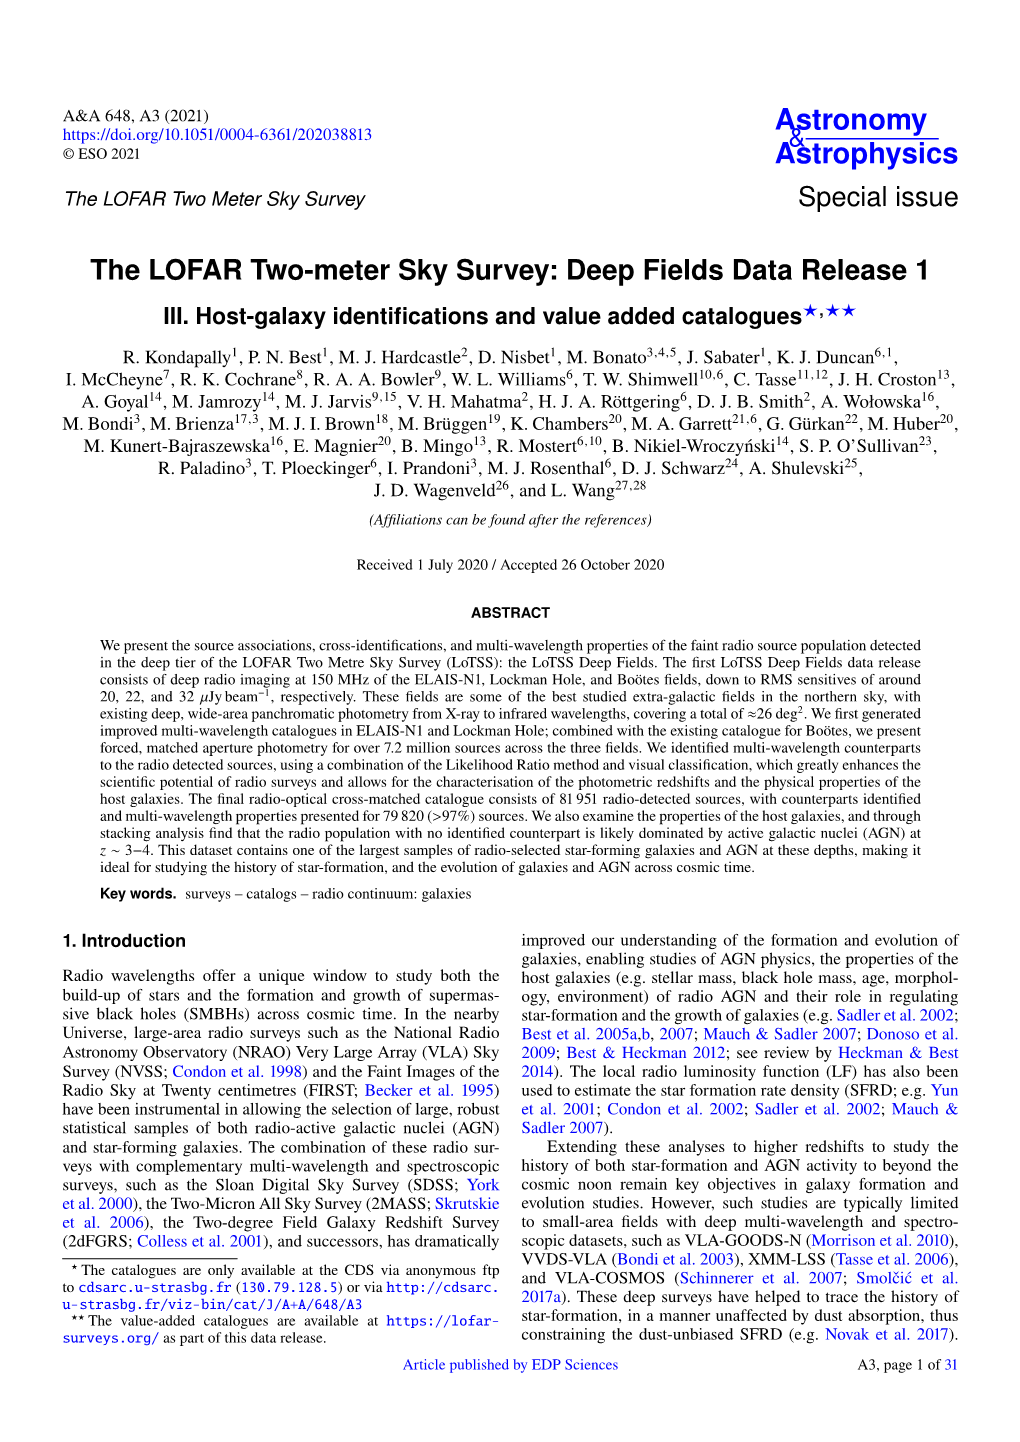 The LOFAR Two-Meter Sky Survey: Deep Fields Data Release 1 III